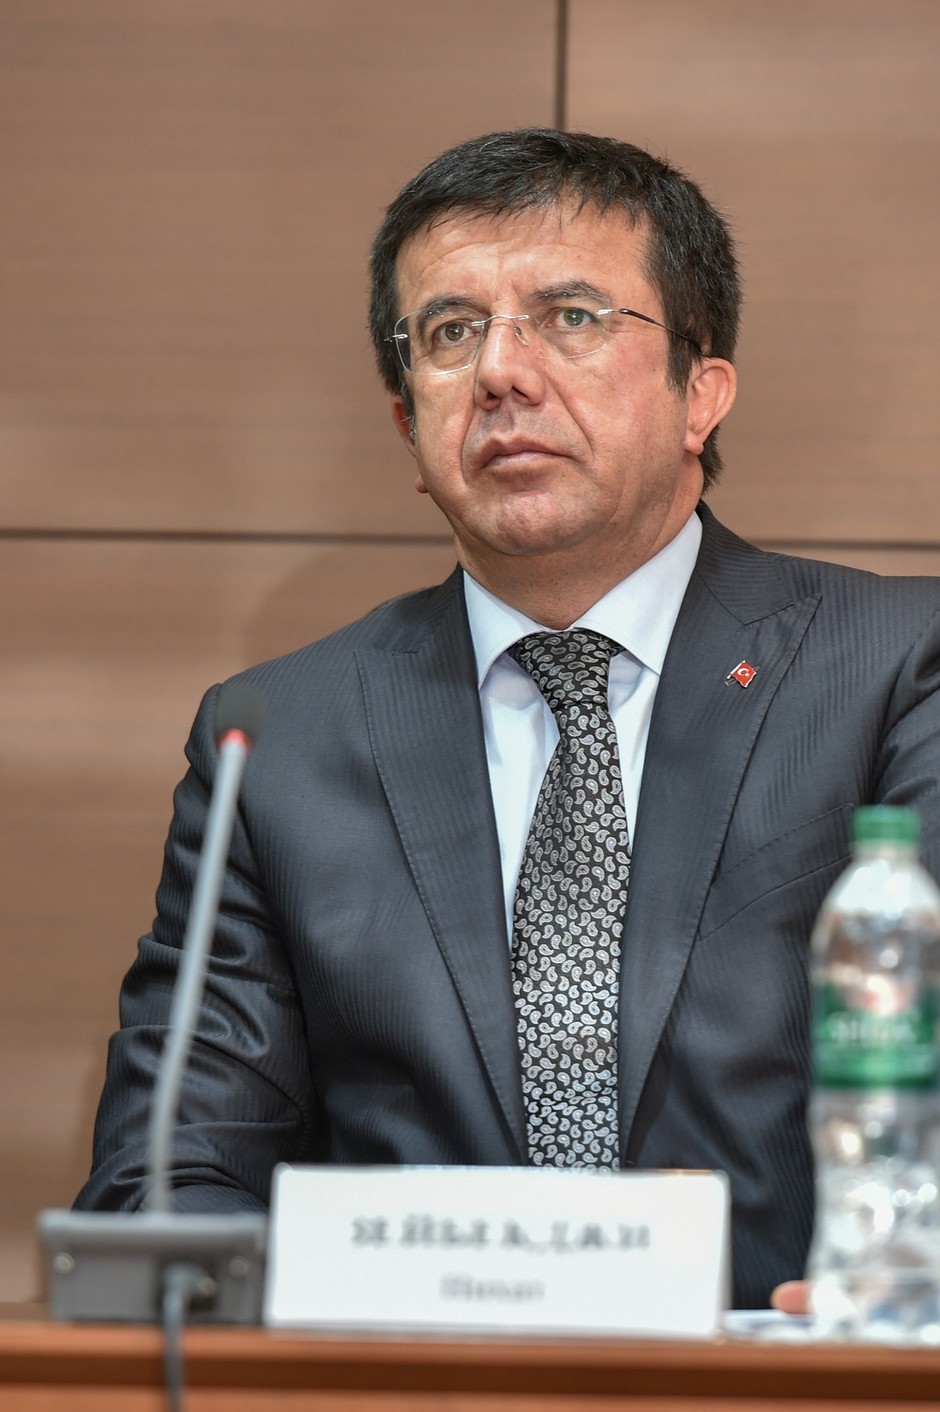 27 марта 2015 года. Визит министра экономики Турецкой Республики Нихата Зейбекчи